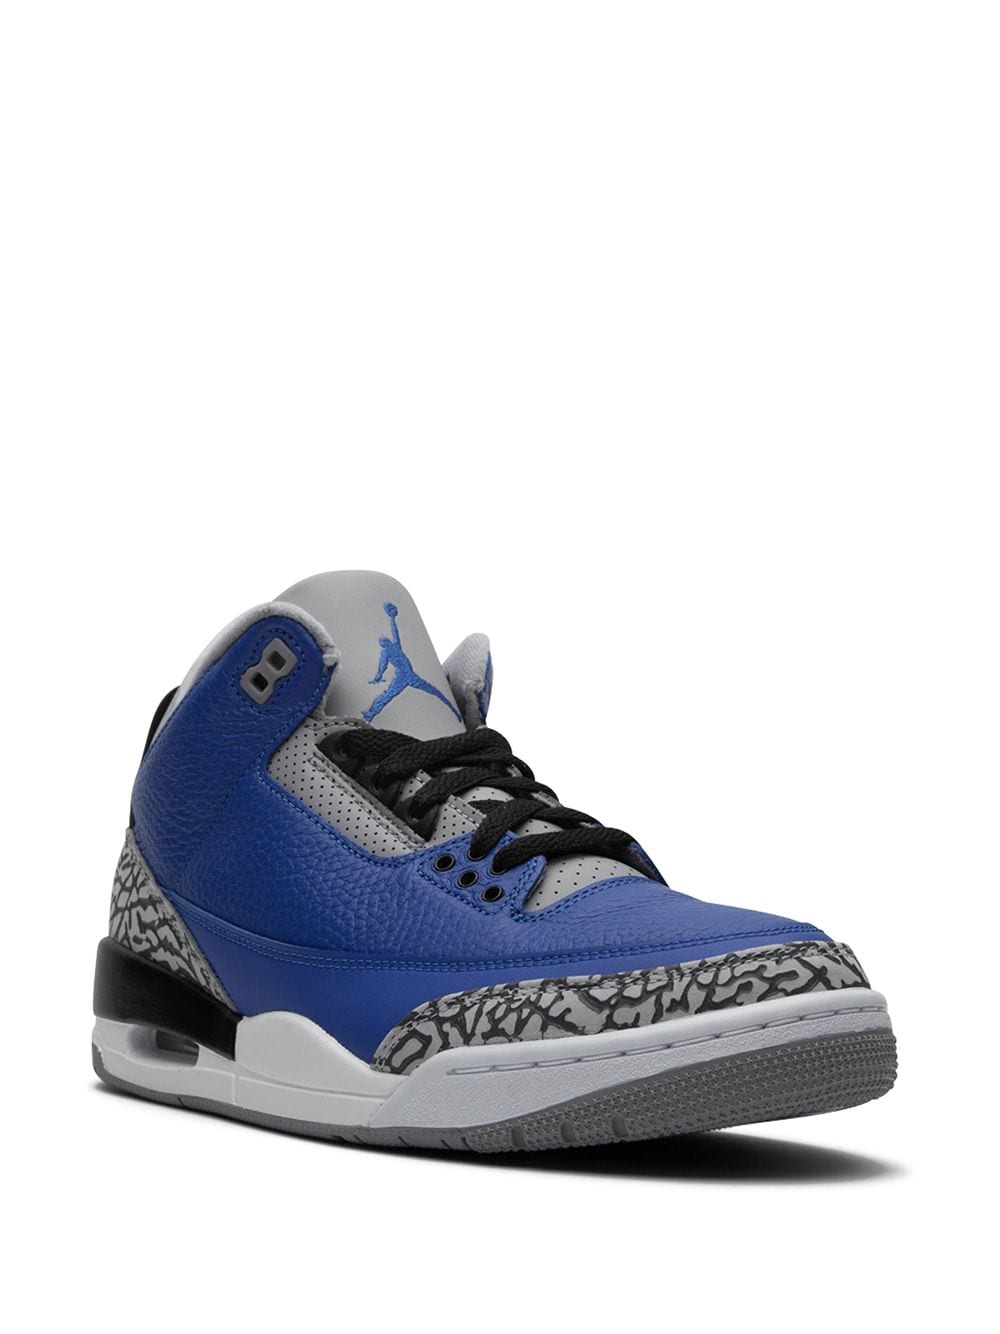 Image 2 of Jordan Air Jordan 3 Retro "Blue Cement" sneakers